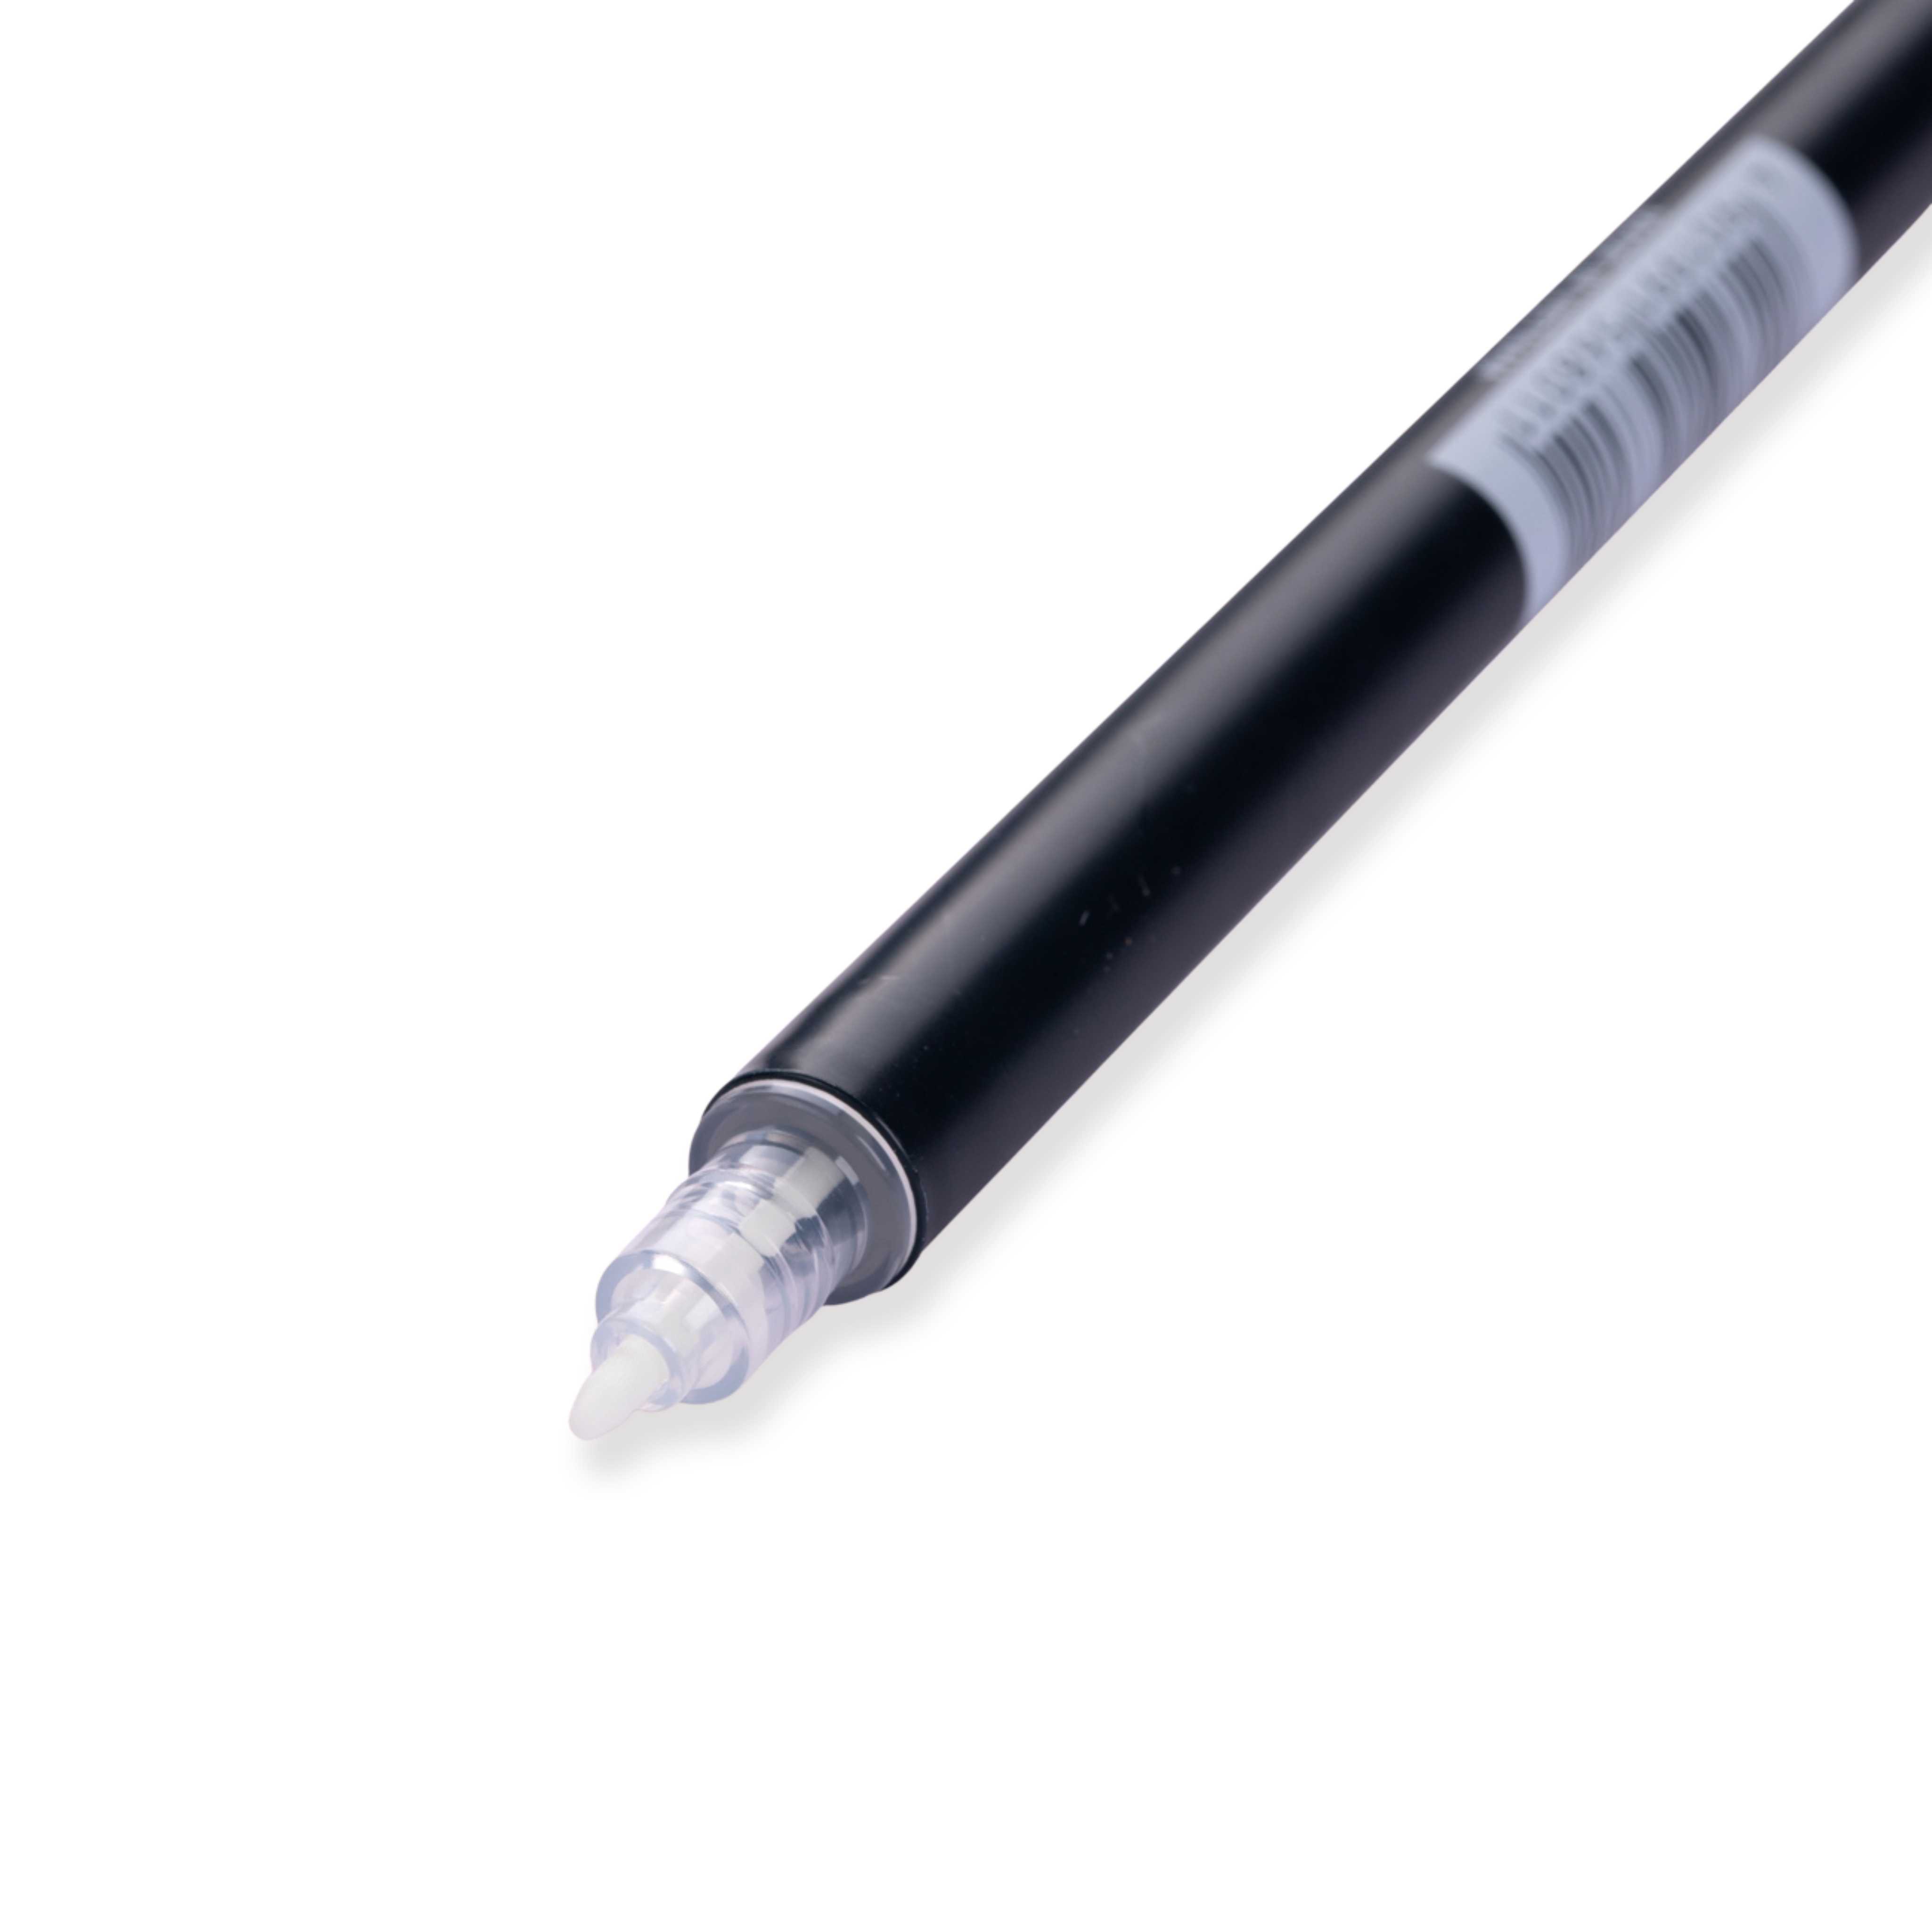 Tombow Dual Brush Pen Graustufen - N00 - Farbloser Blender